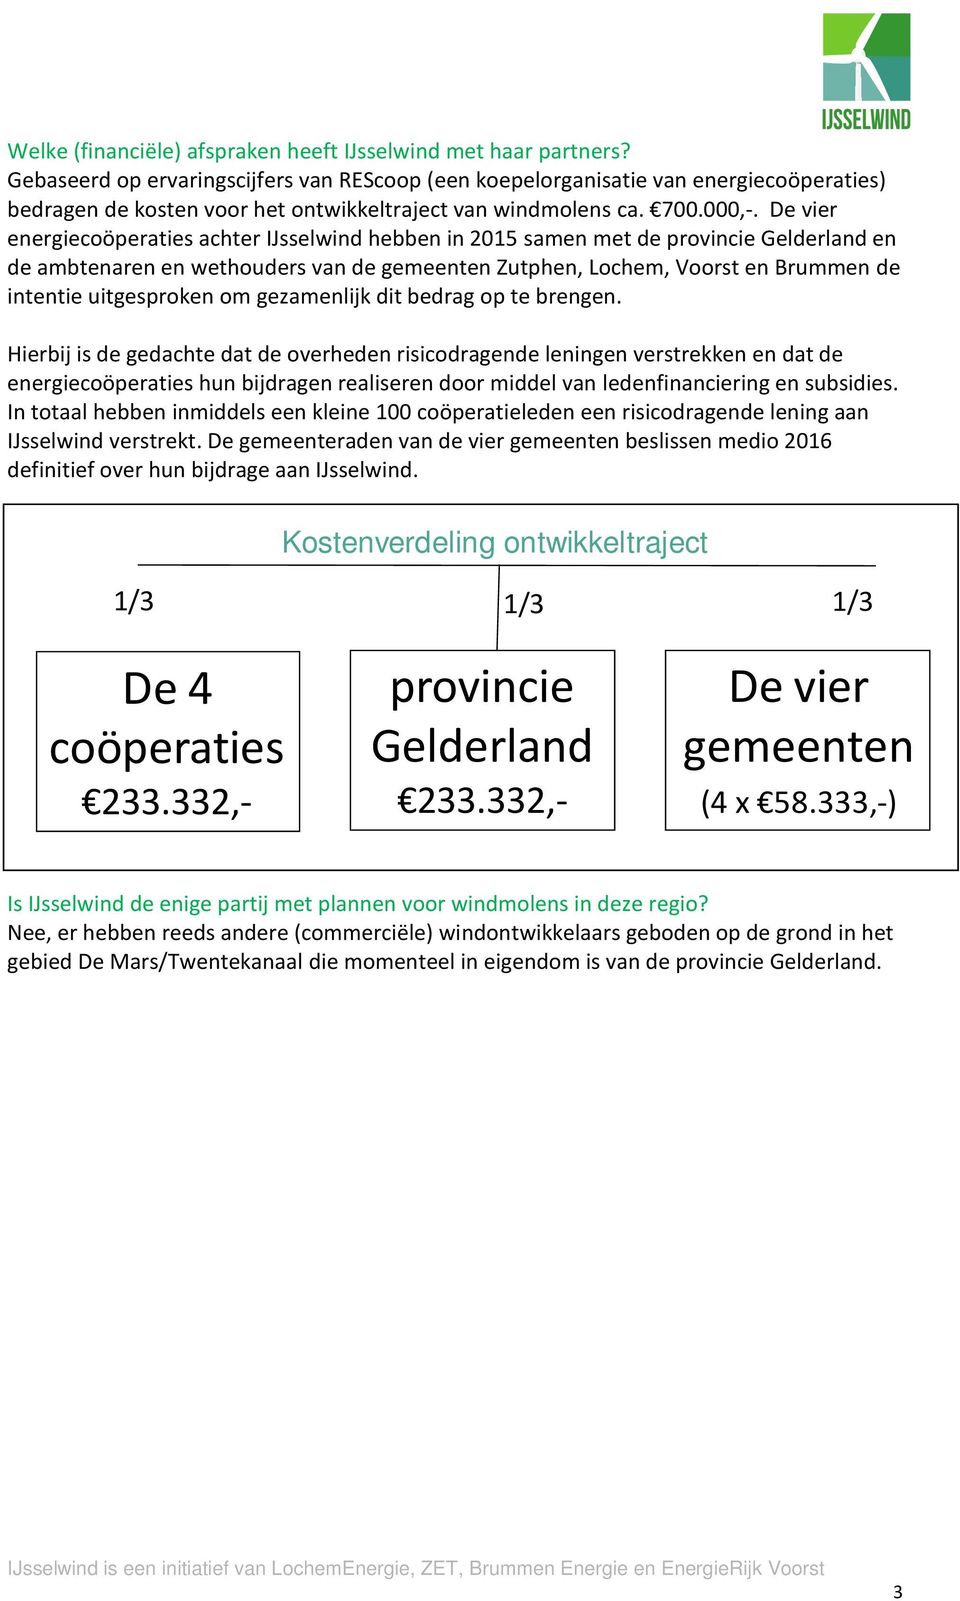 De vier energiecoöperaties achter IJsselwind hebben in 2015 samen met de provincie Gelderland en de ambtenaren en wethouders van de gemeenten Zutphen, Lochem, Voorst en Brummen de intentie